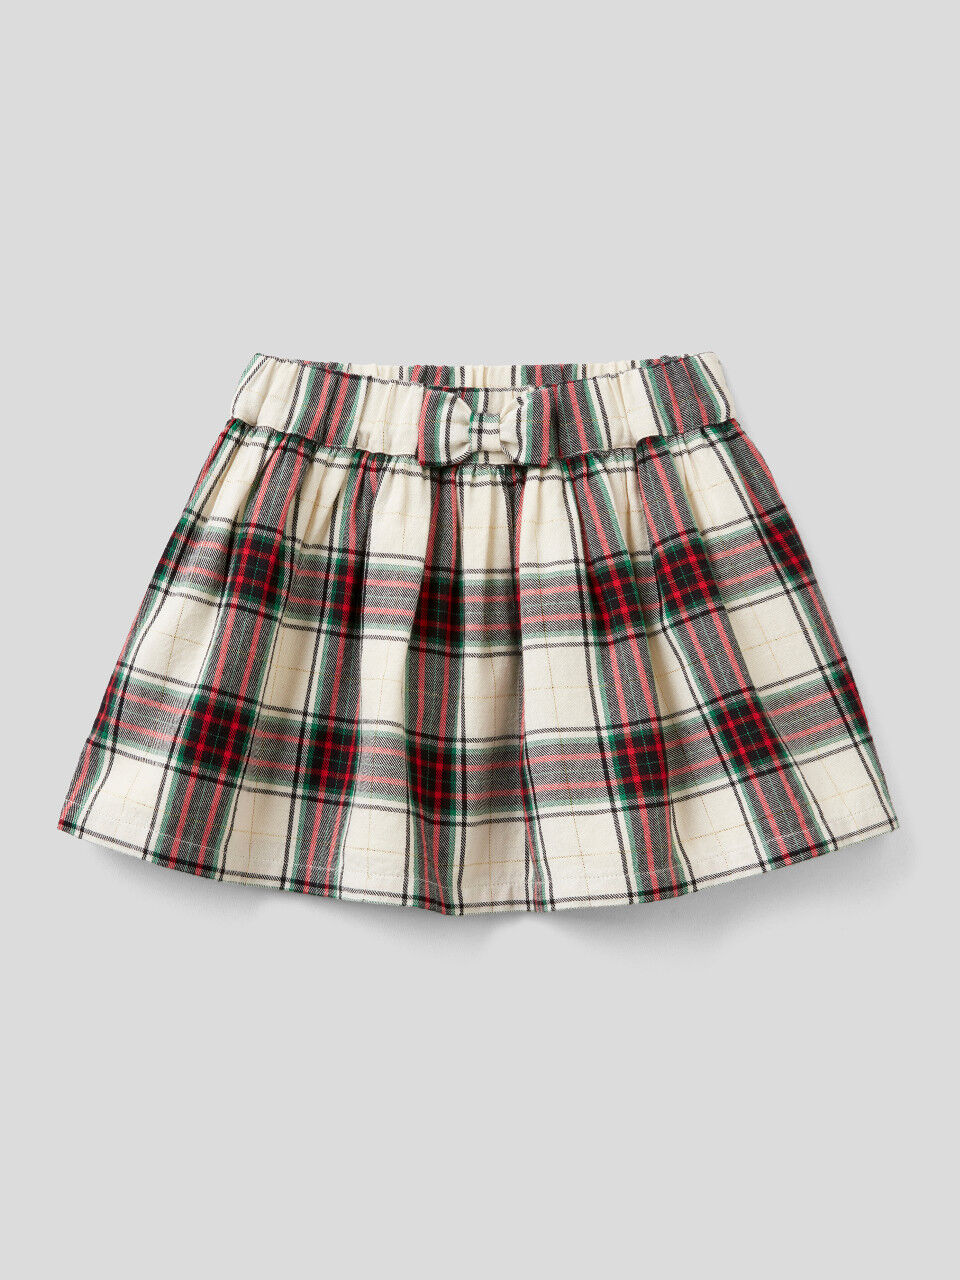 Tartan skirt in flannel